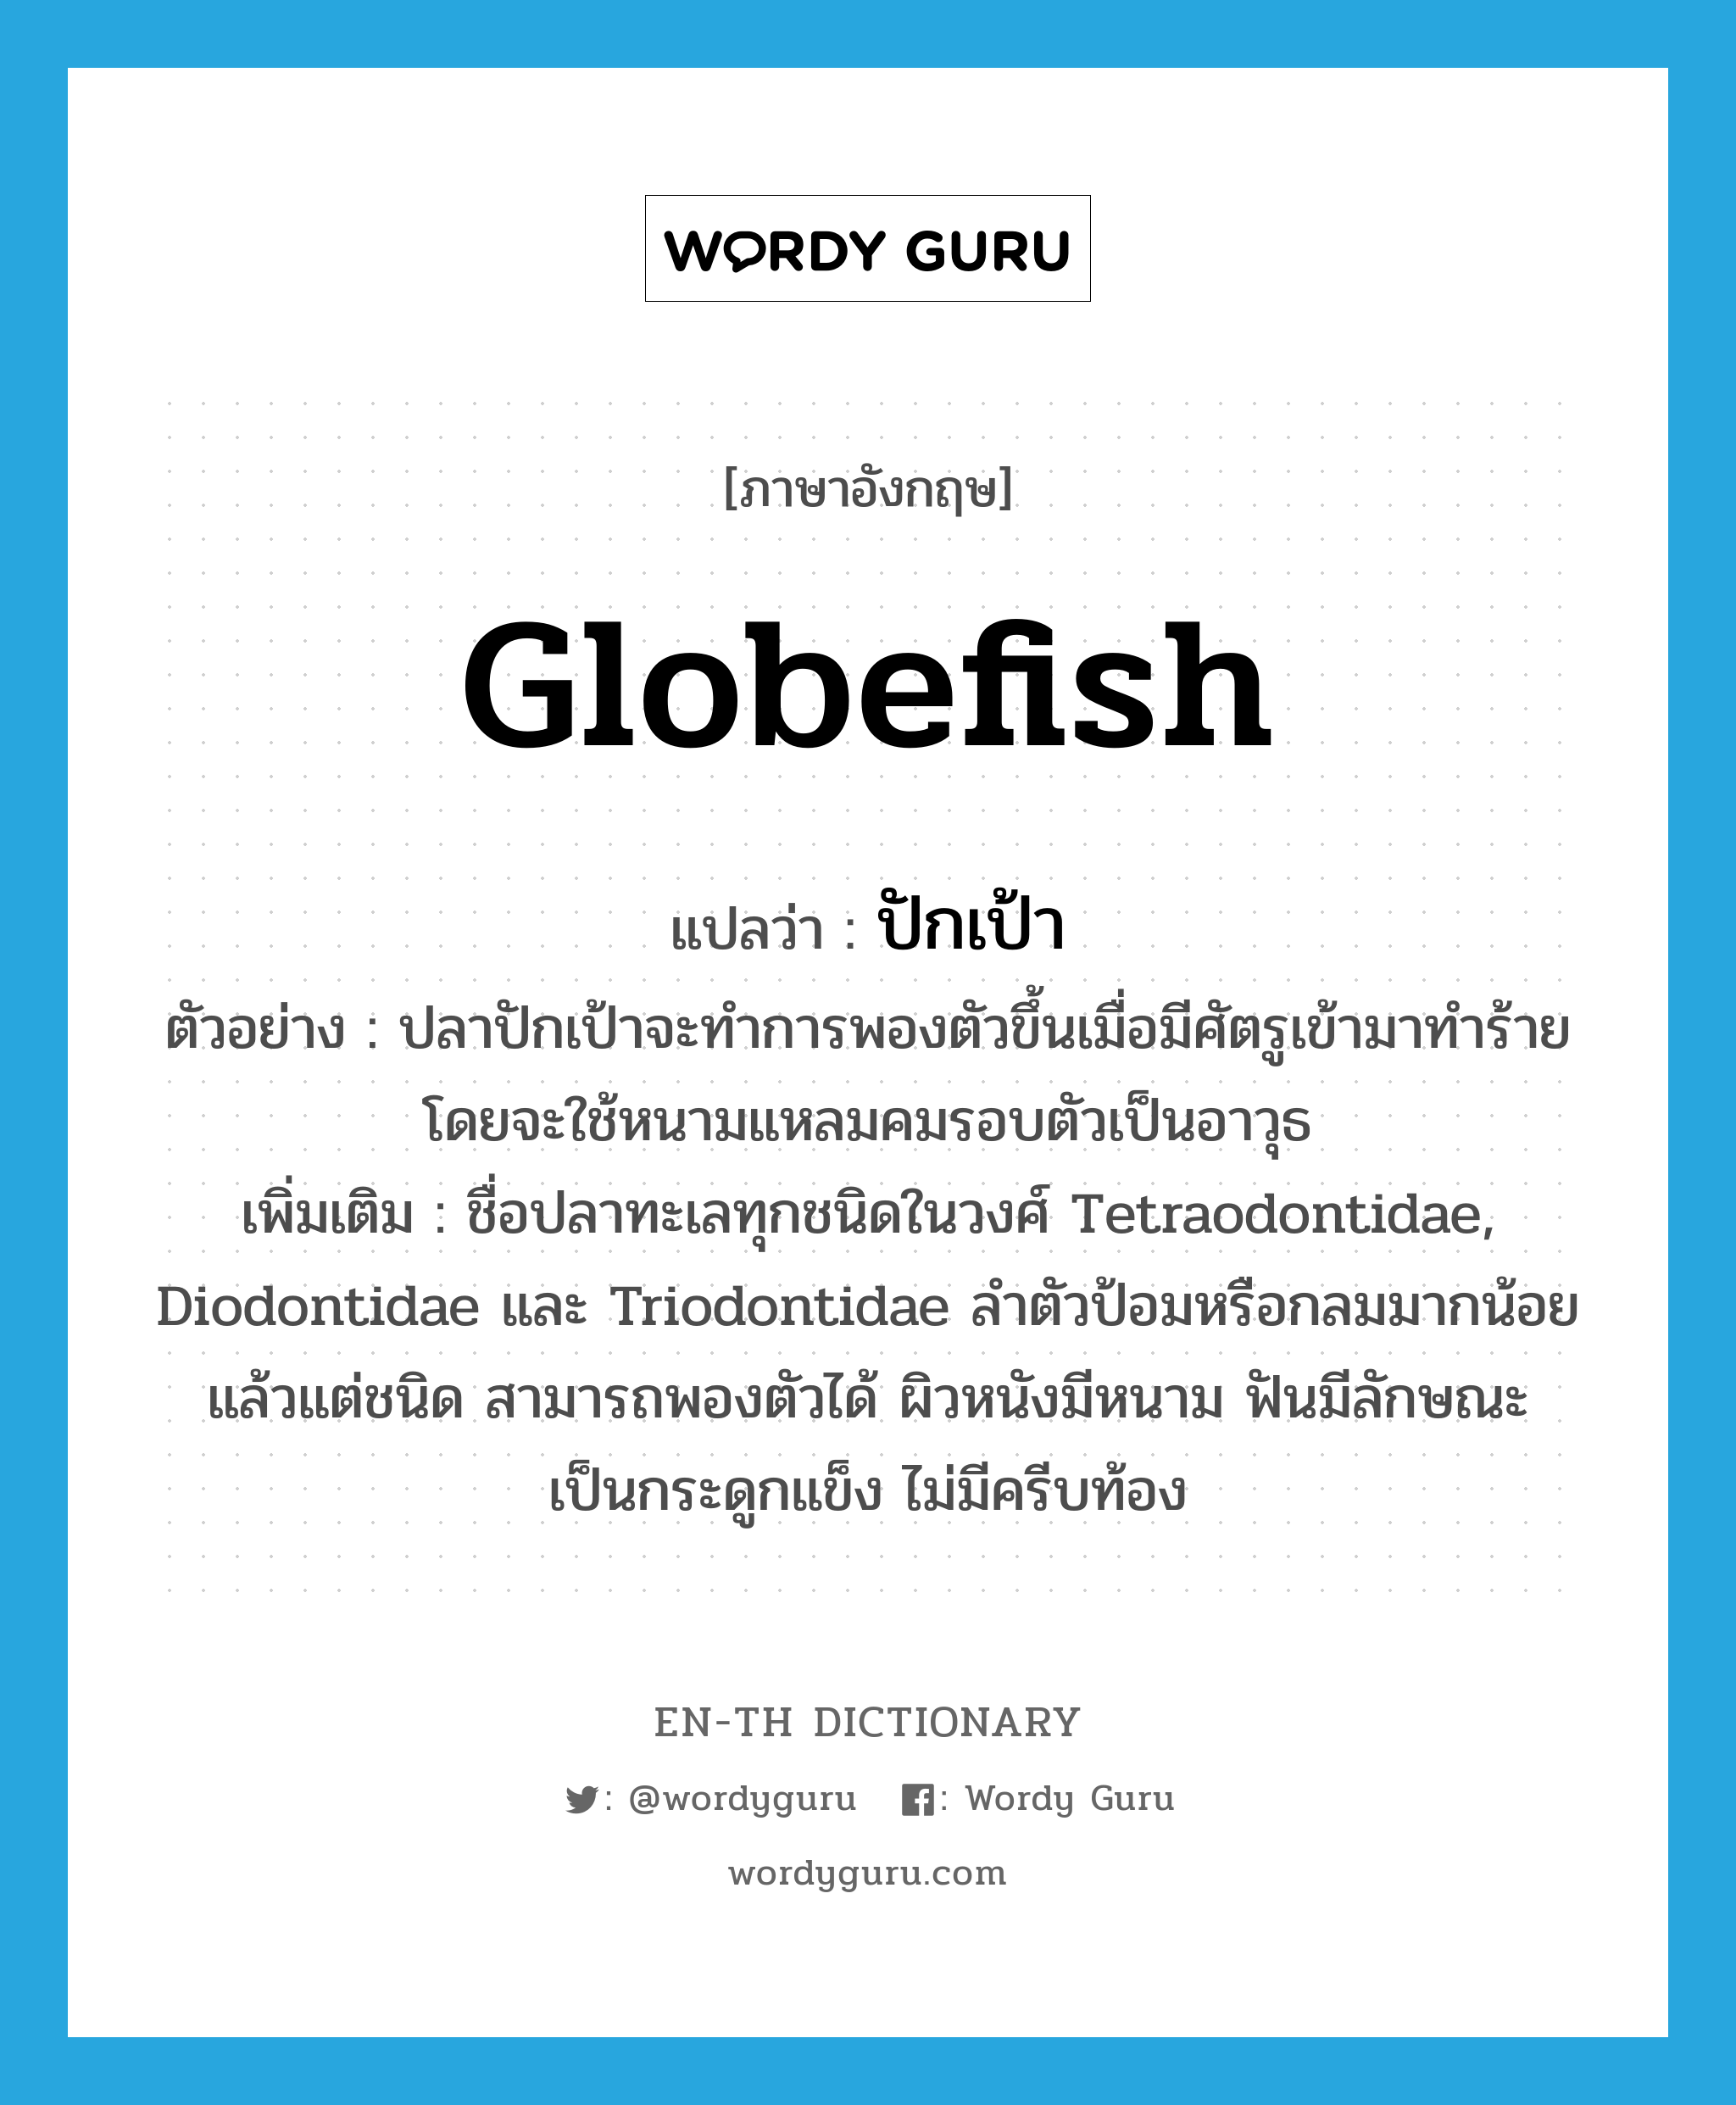 ปักเป้า ภาษาอังกฤษ?, คำศัพท์ภาษาอังกฤษ ปักเป้า แปลว่า globefish ประเภท N ตัวอย่าง ปลาปักเป้าจะทำการพองตัวขึ้นเมื่อมีศัตรูเข้ามาทำร้าย โดยจะใช้หนามแหลมคมรอบตัวเป็นอาวุธ เพิ่มเติม ชื่อปลาทะเลทุกชนิดในวงศ์ Tetraodontidae, Diodontidae และ Triodontidae ลำตัวป้อมหรือกลมมากน้อยแล้วแต่ชนิด สามารถพองตัวได้ ผิวหนังมีหนาม ฟันมีลักษณะเป็นกระดูกแข็ง ไม่มีครีบท้อง หมวด N